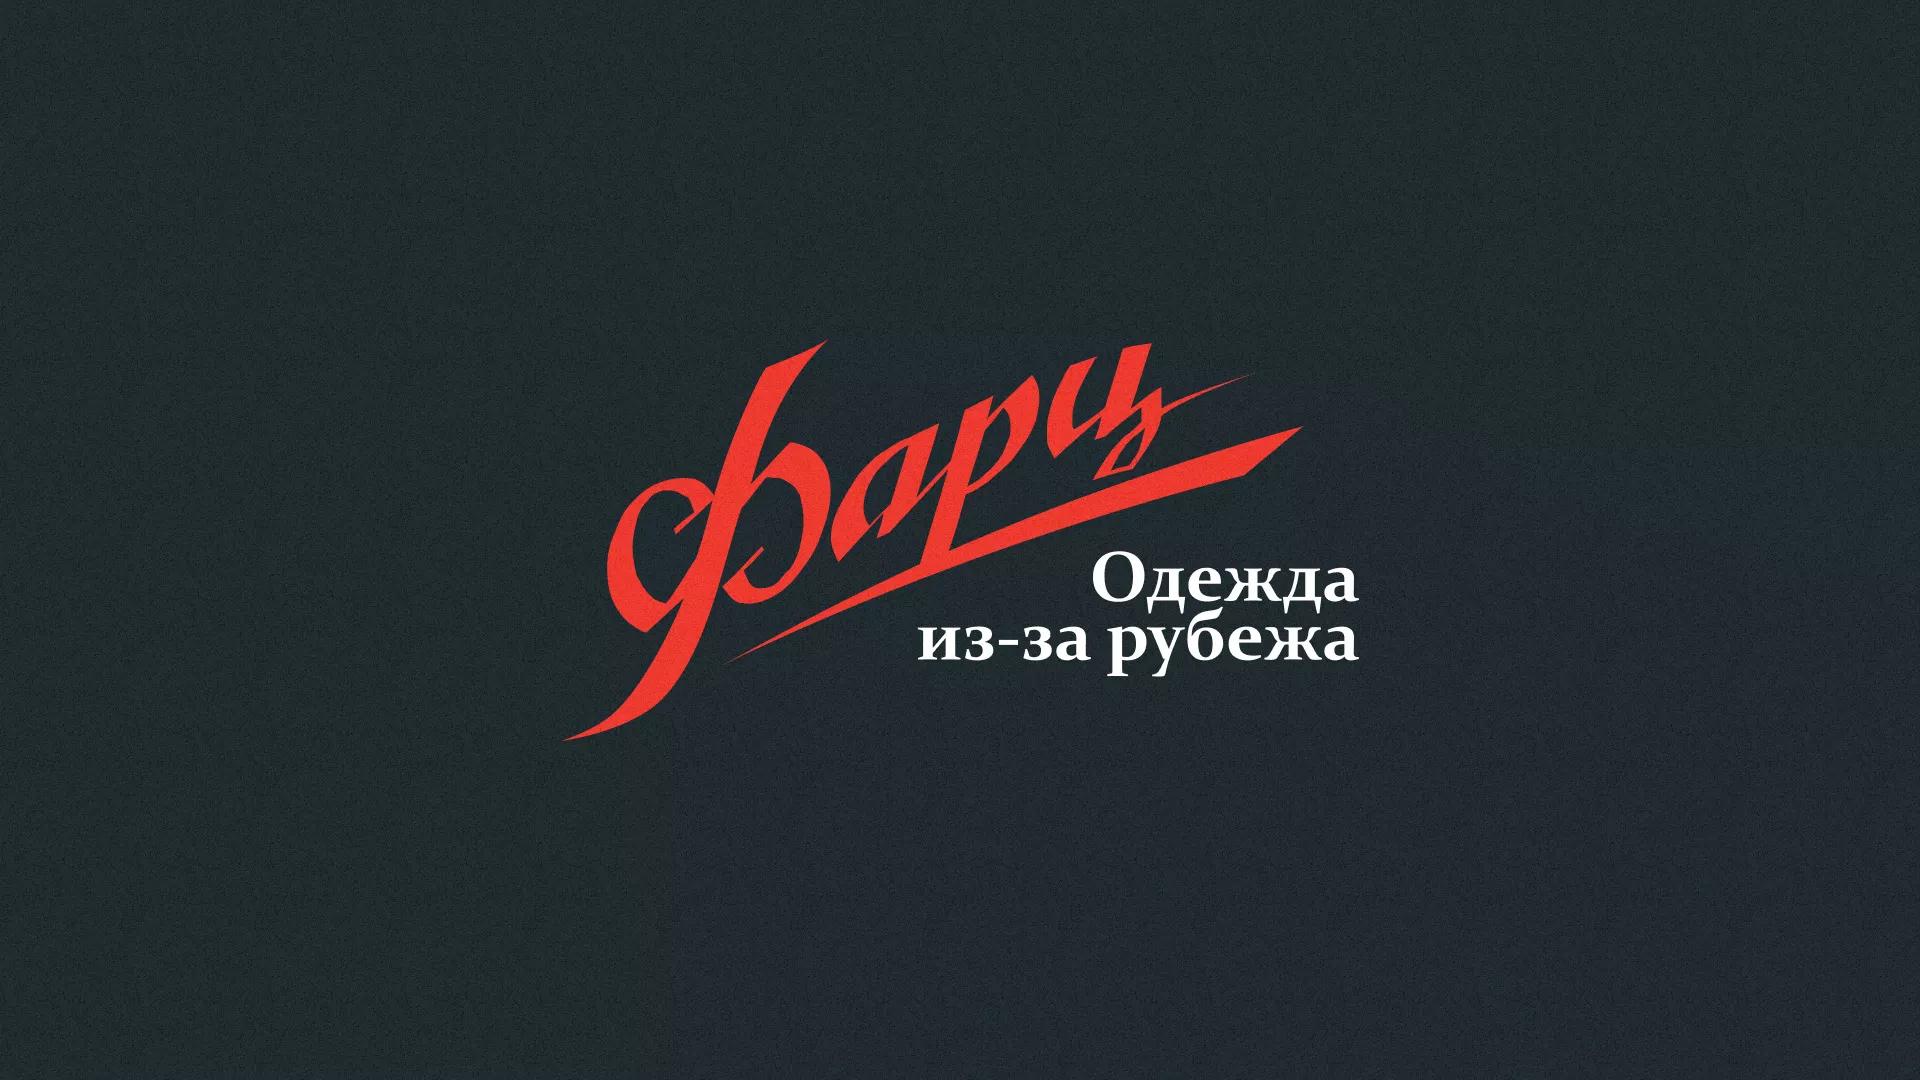 Разработка логотипа магазина «Фарц» в Холме